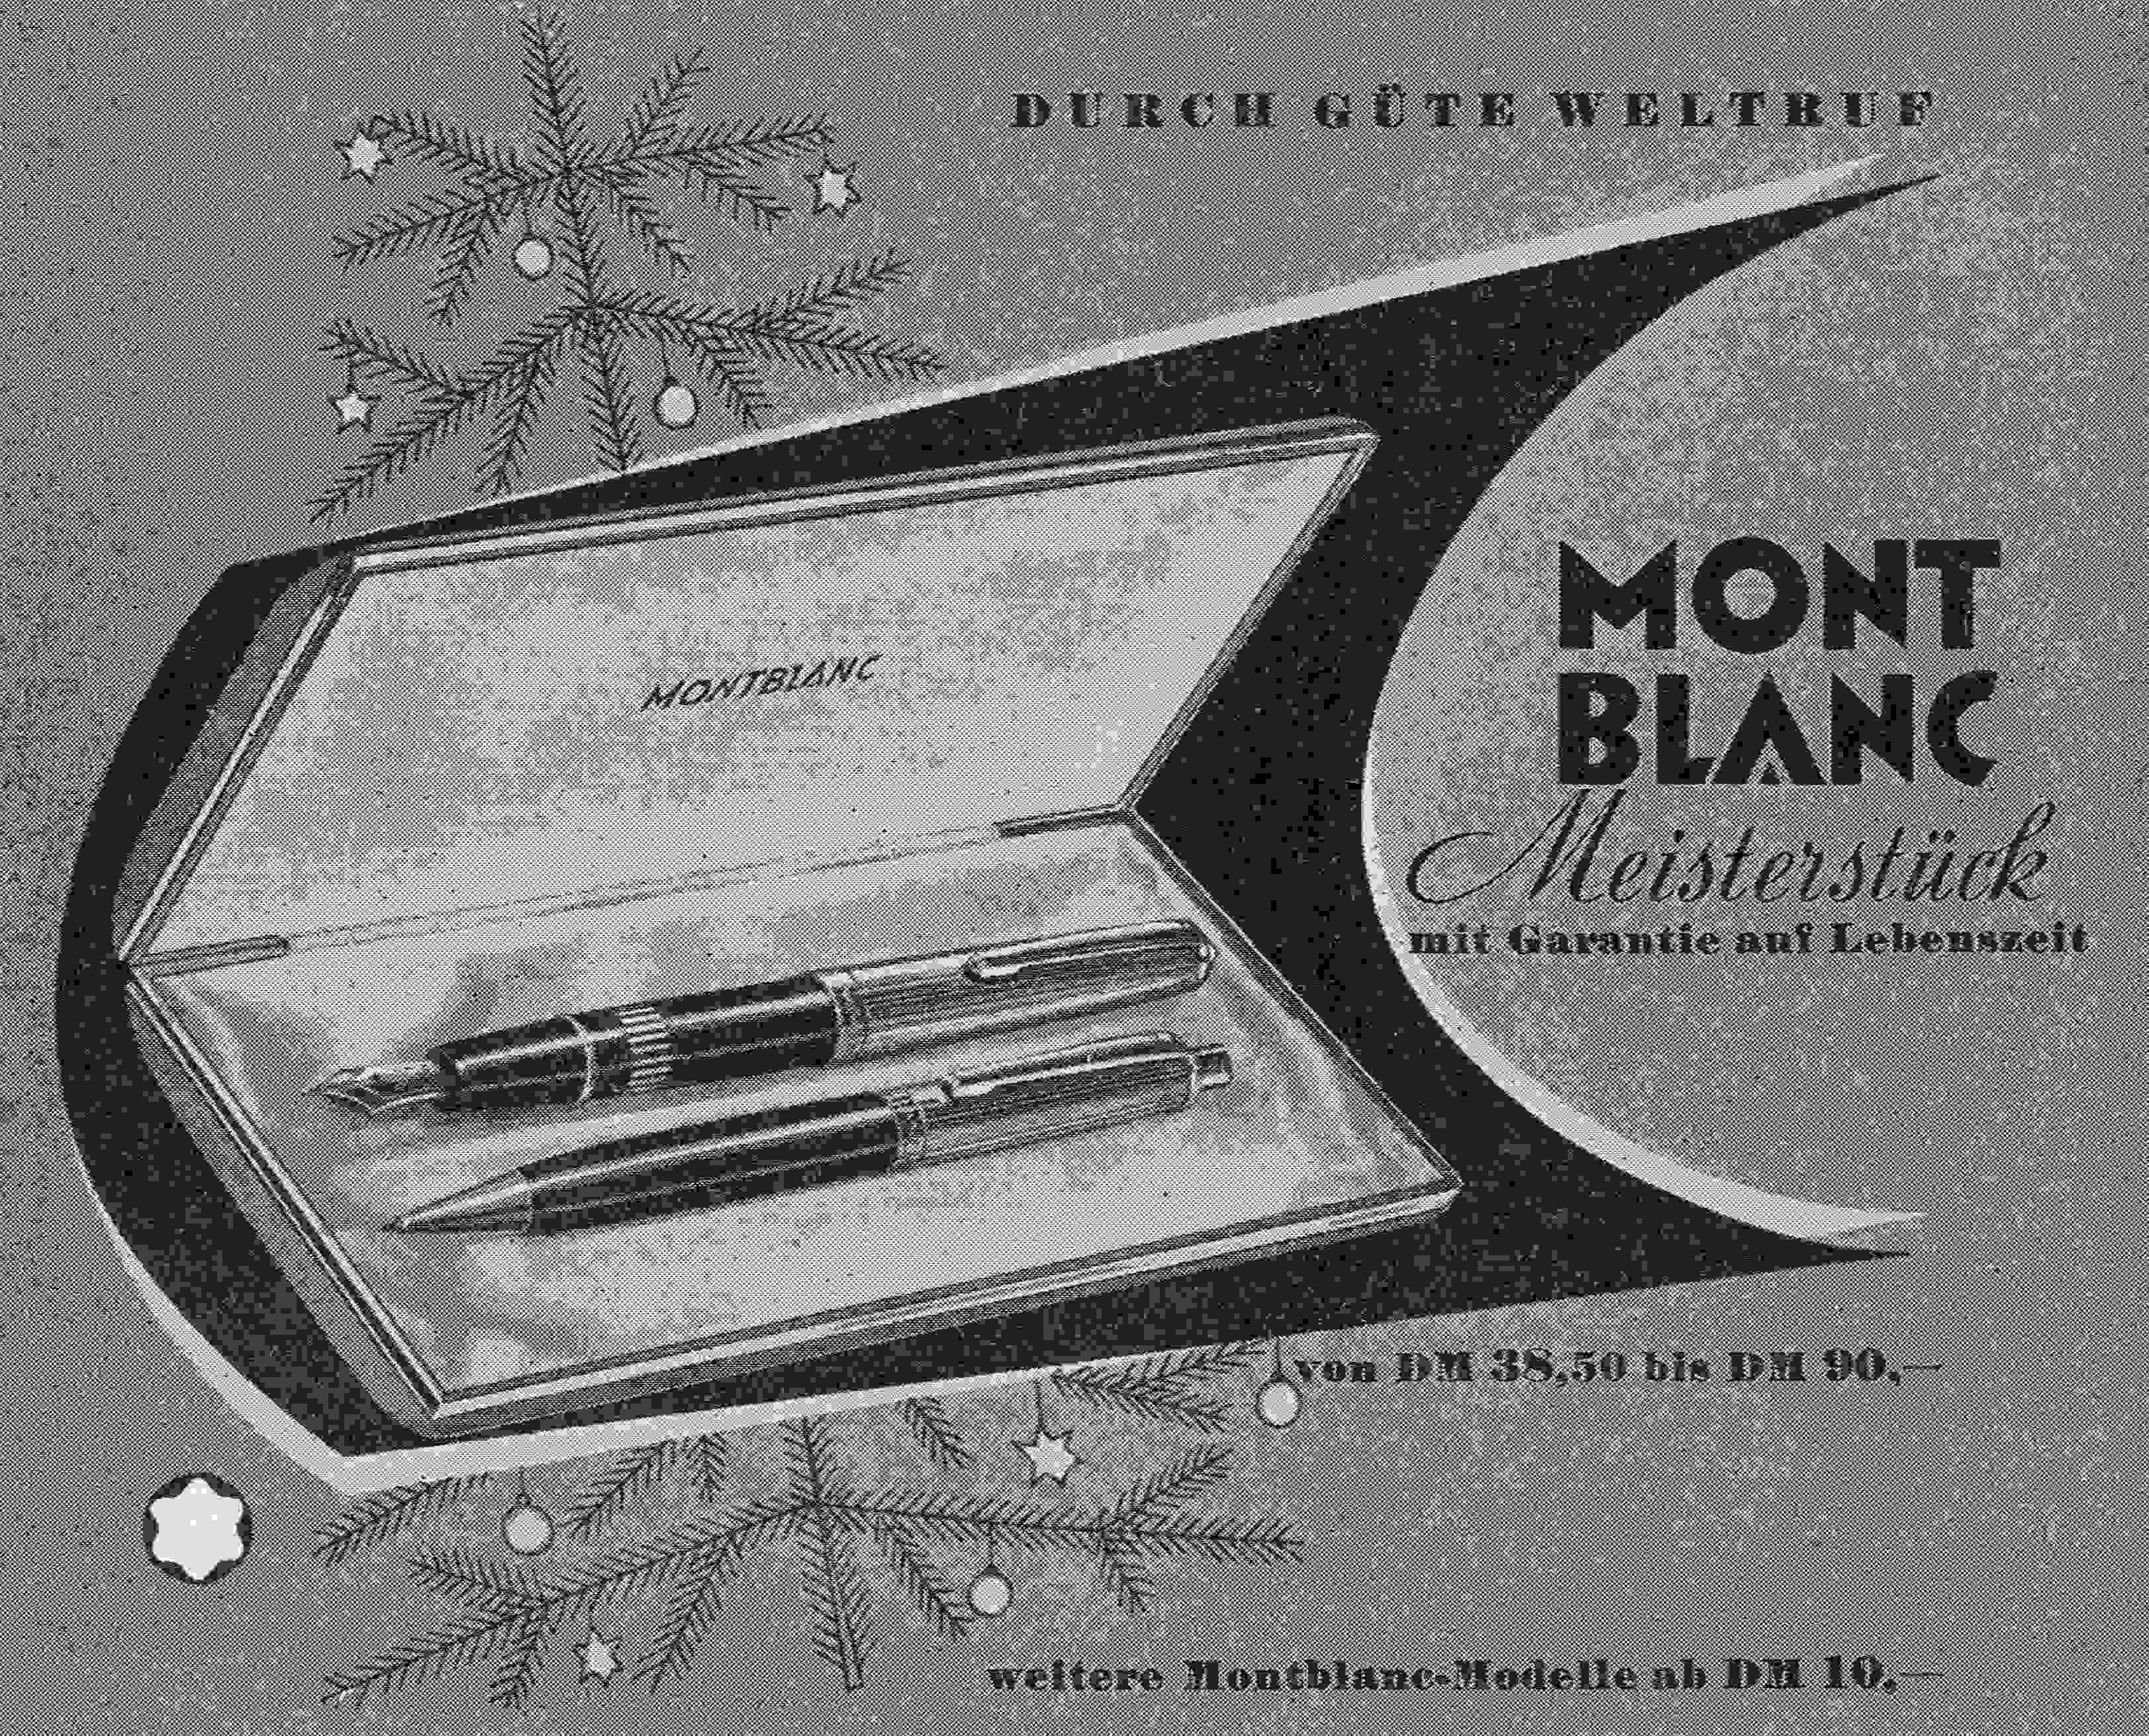 Montblanc-Werbung_Garantie-auf-Lebenszeit.jpg